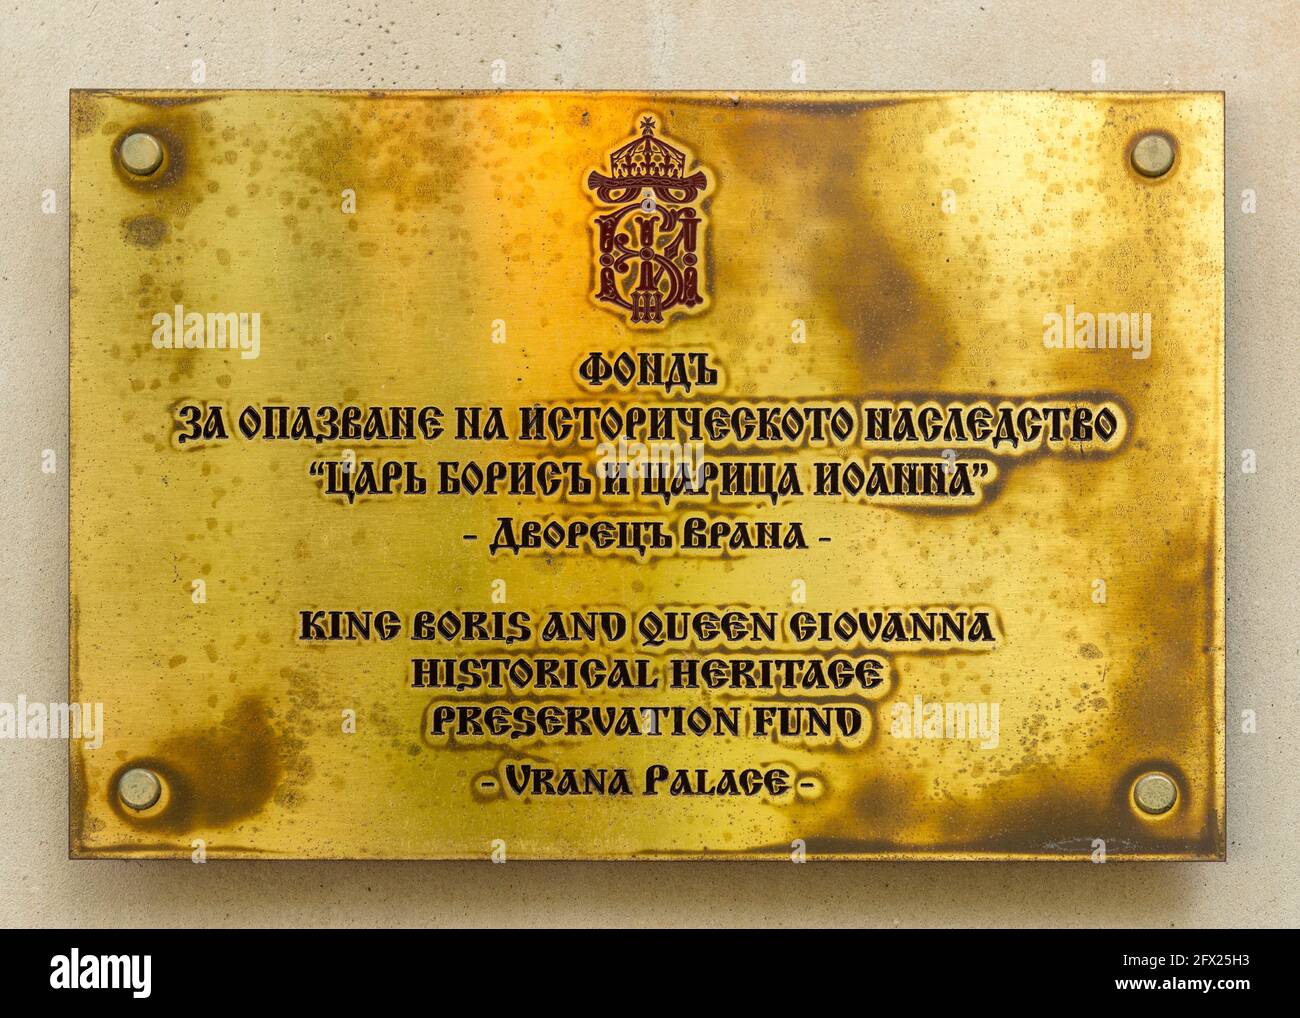 Messingtafel für den Fonds zur Erhaltung des historischen Erbes von König Boris und Königin Giovanna in der ehemaligen königlichen Residenz Vrana Palace, Sofia, Bulgarien Stockfoto